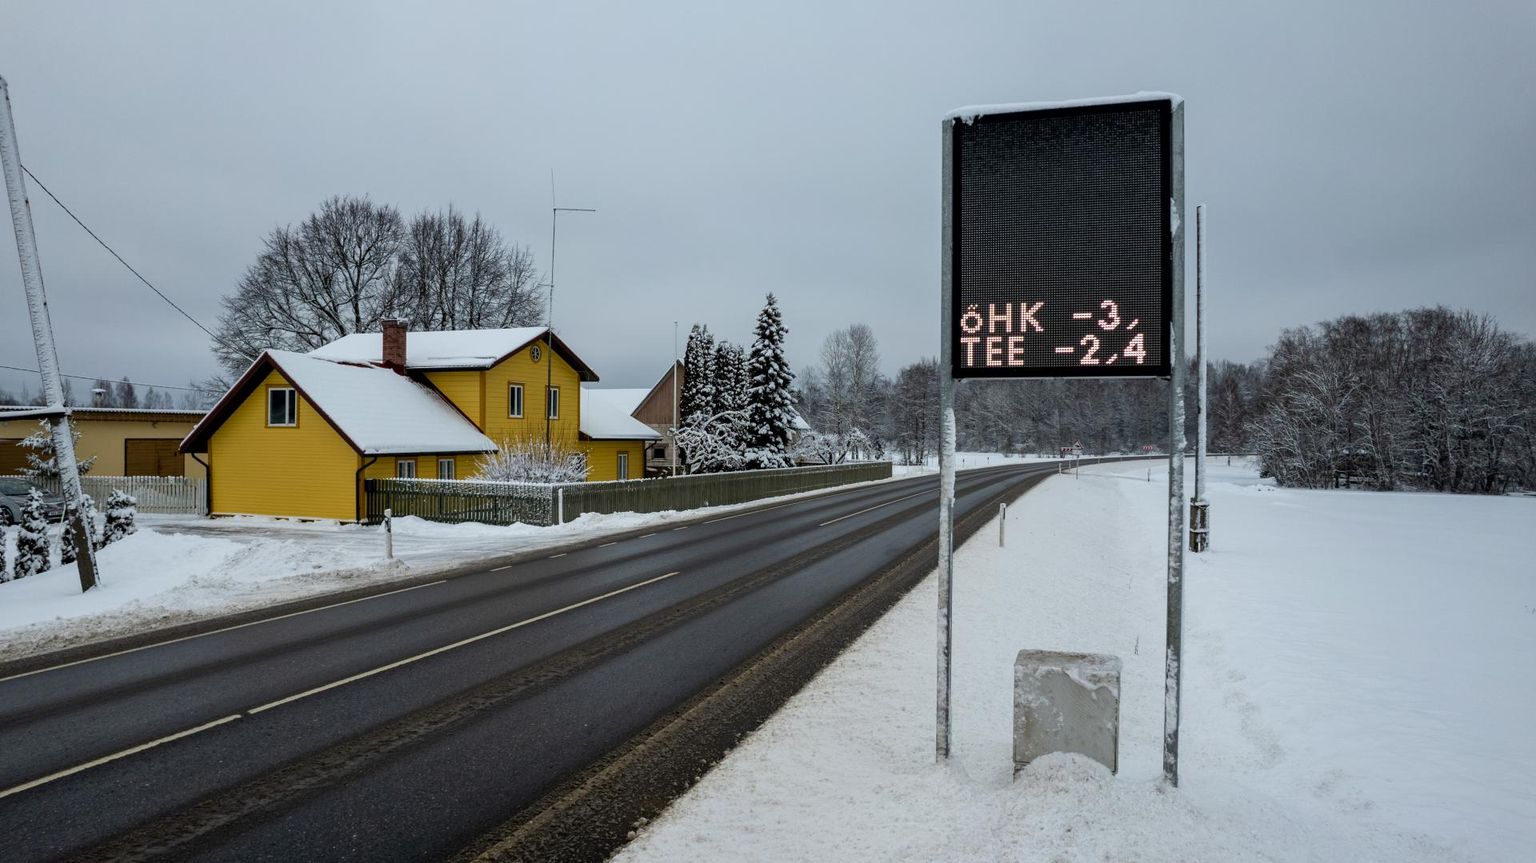 Tänassilma külas Tartu–Viljandi maantee ääres jagab liiklejaile infot elektrooniline infotabloo ehk muutuva teabega märk.